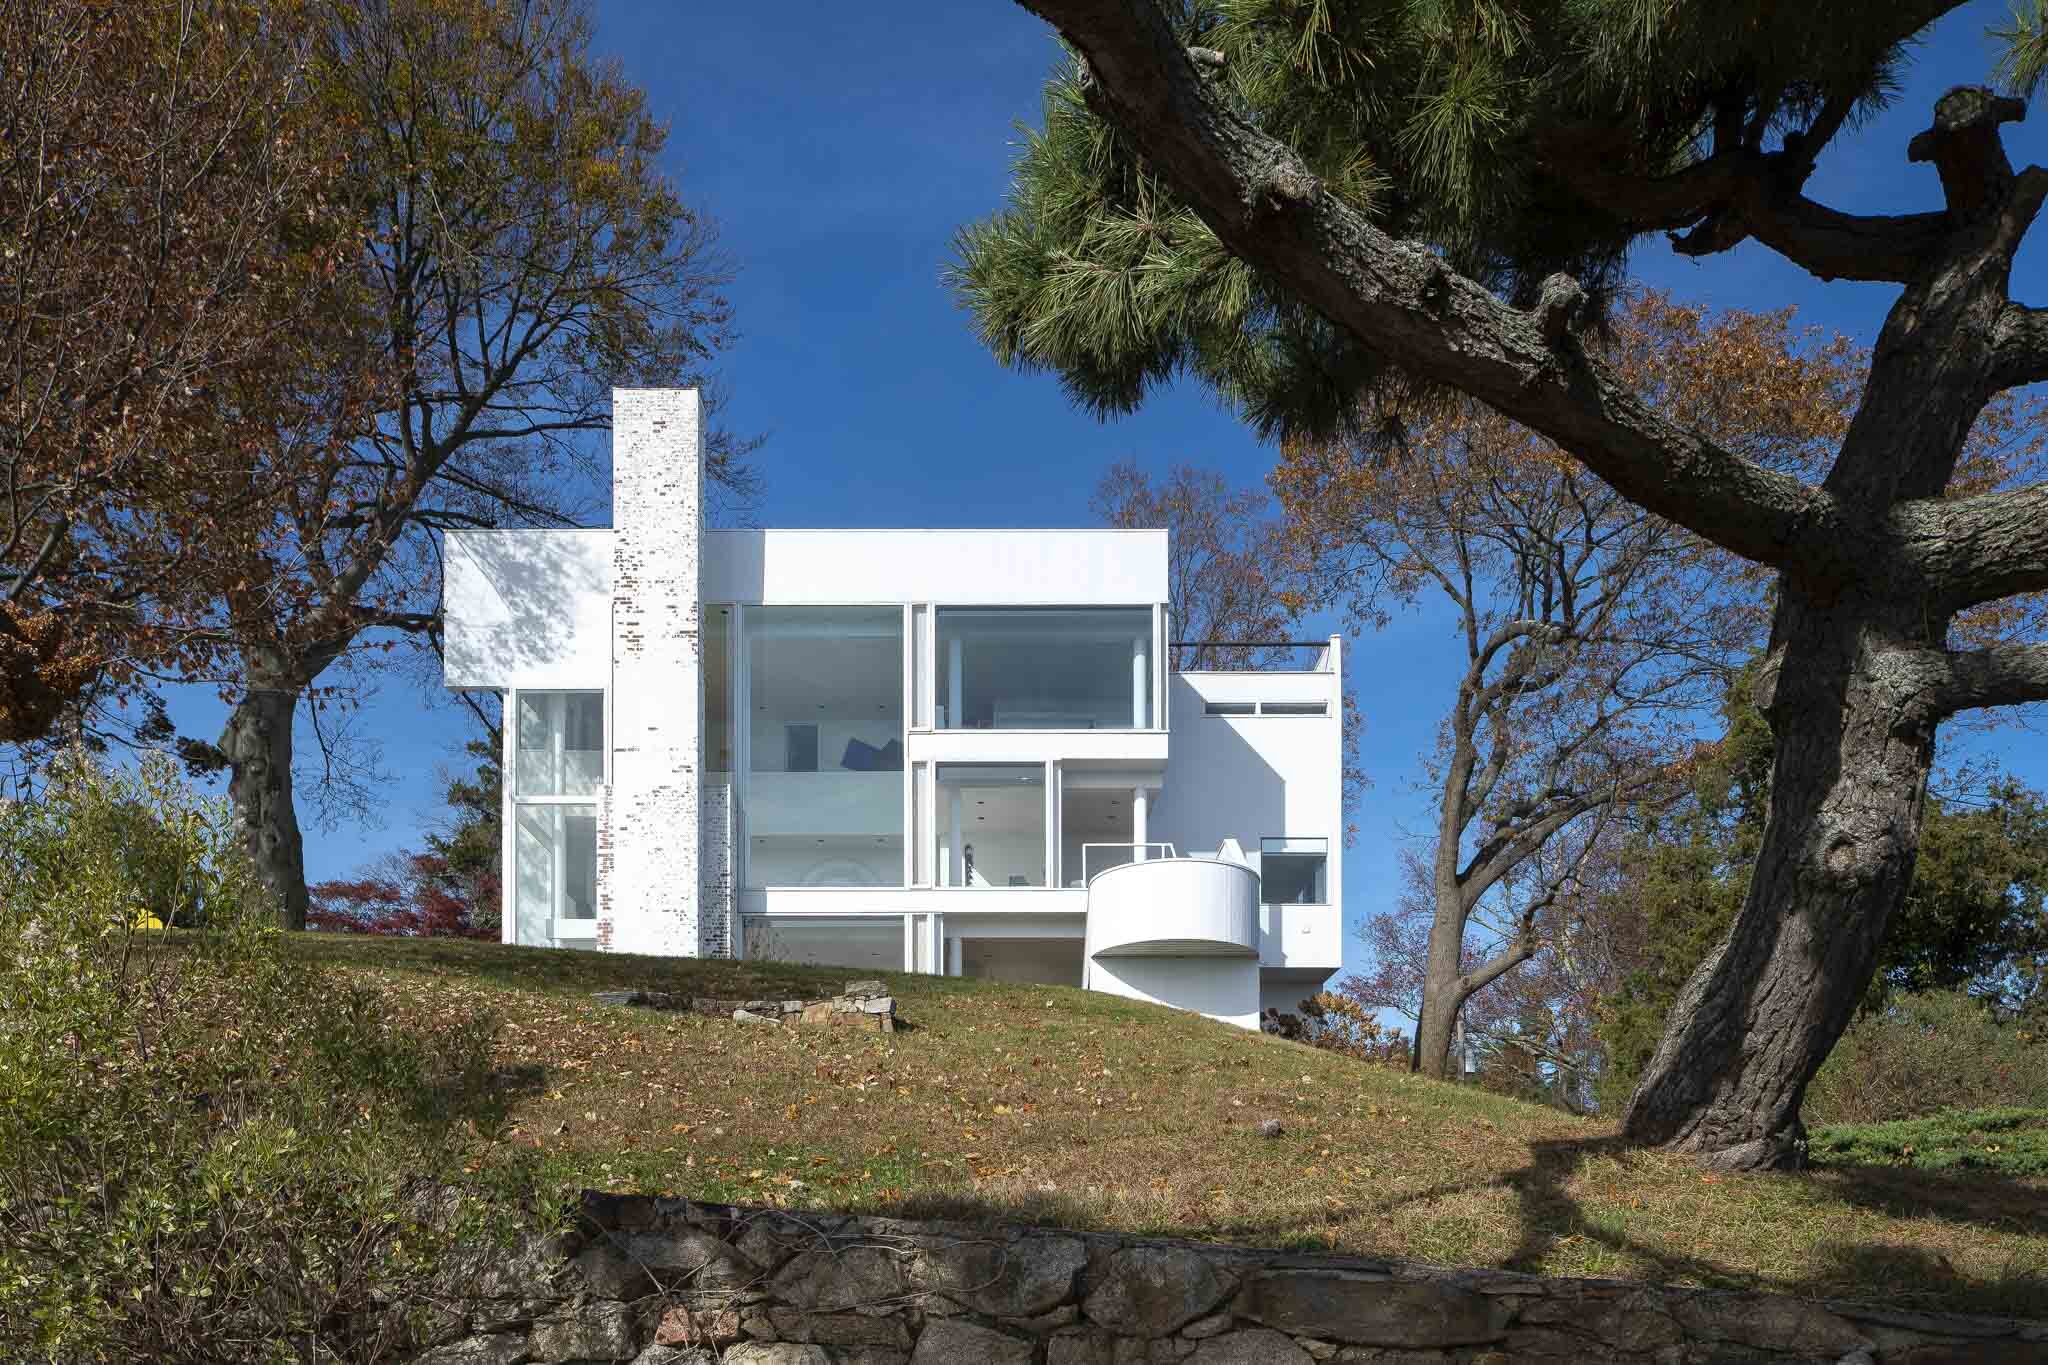 The Smith House by Richard Meier